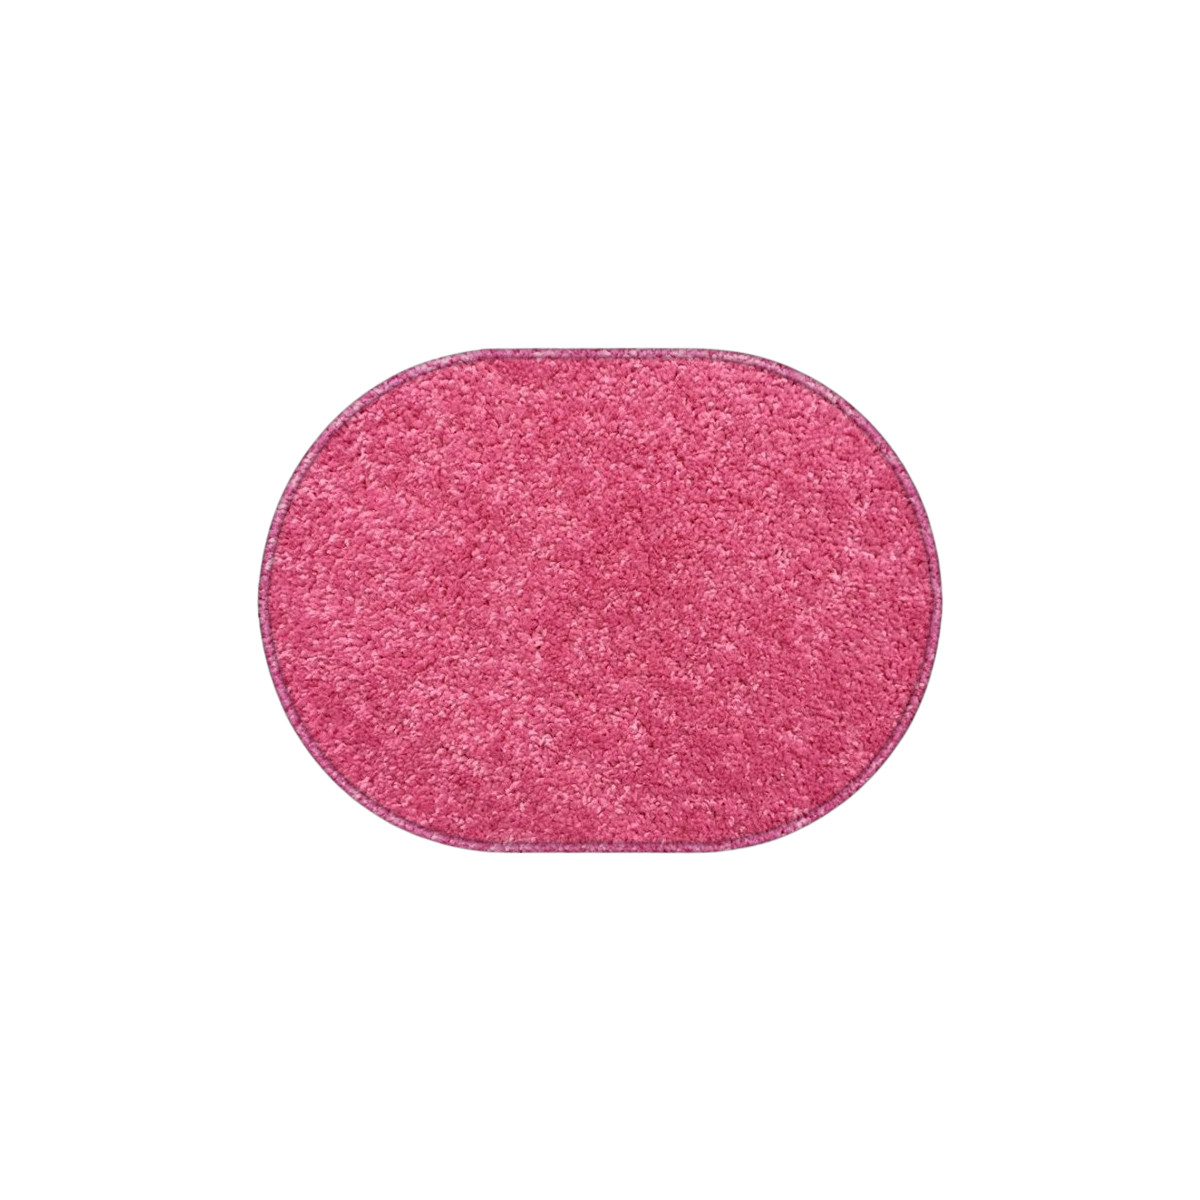 Kusový koberec Eton růžový ovál